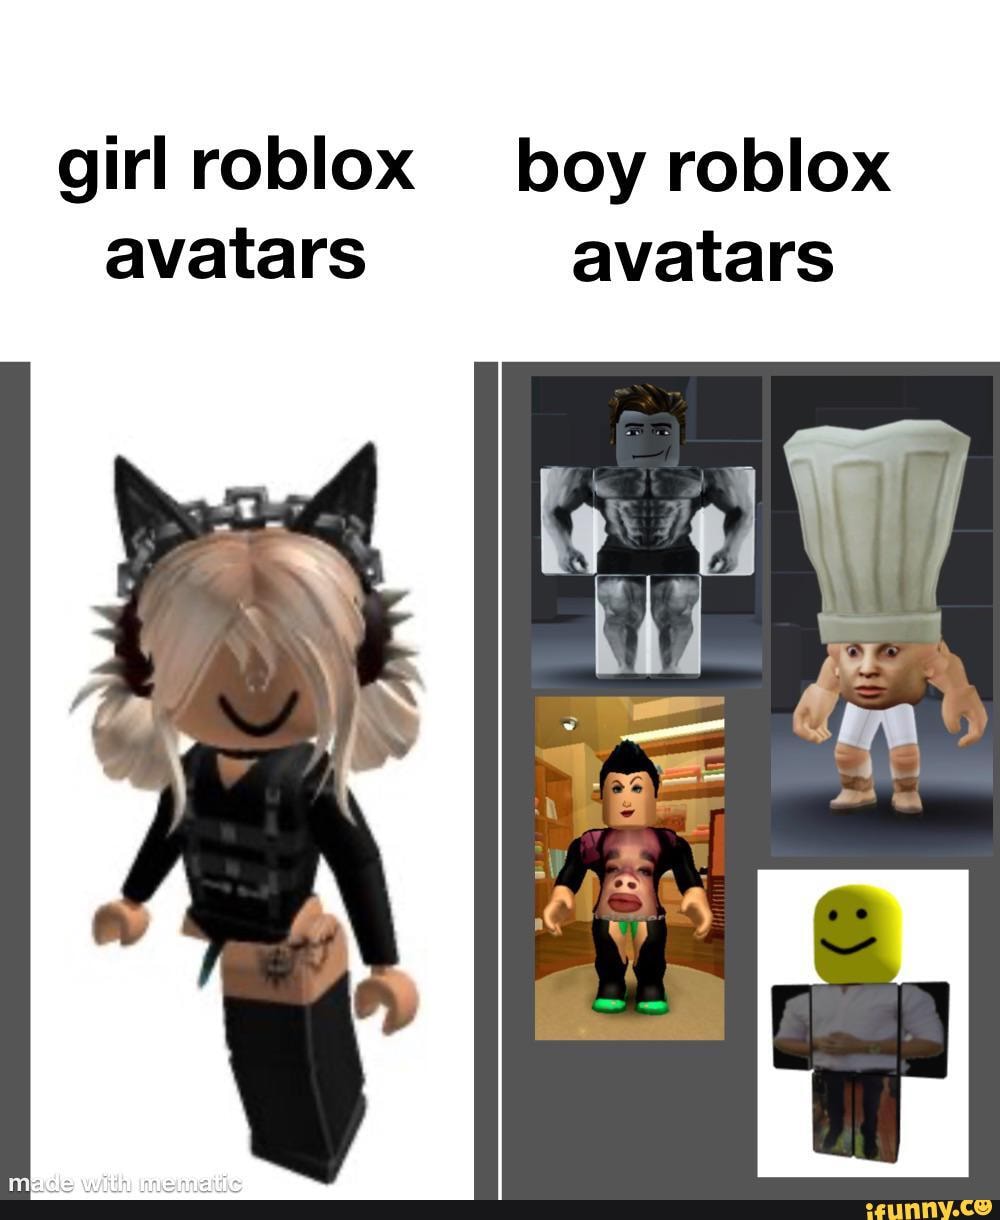 Roblox đã cập nhật gendered avatars để tạo ra những trải nghiệm chơi game linh hoạt và đa dạng hơn bao giờ hết. Hãy xem để khám phá các avatar độc đáo và phù hợp với bản thân bạn!